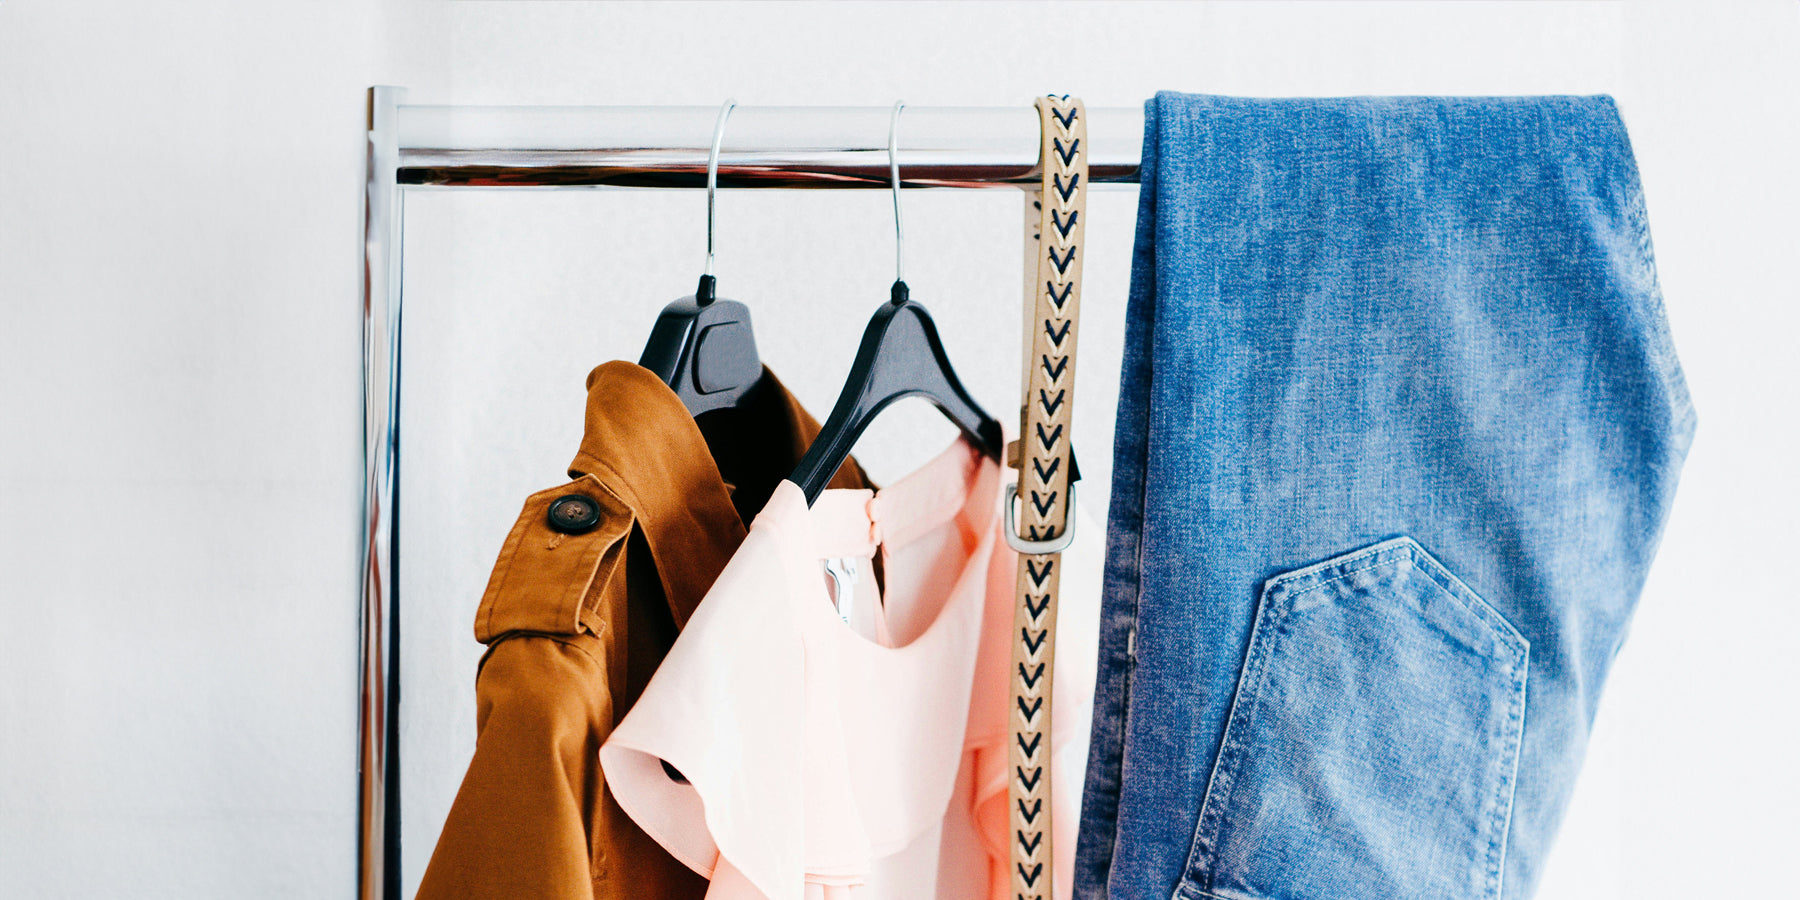 Kwalitatieve mode voor minder: tips voor een budgetvriendelijke garderobe